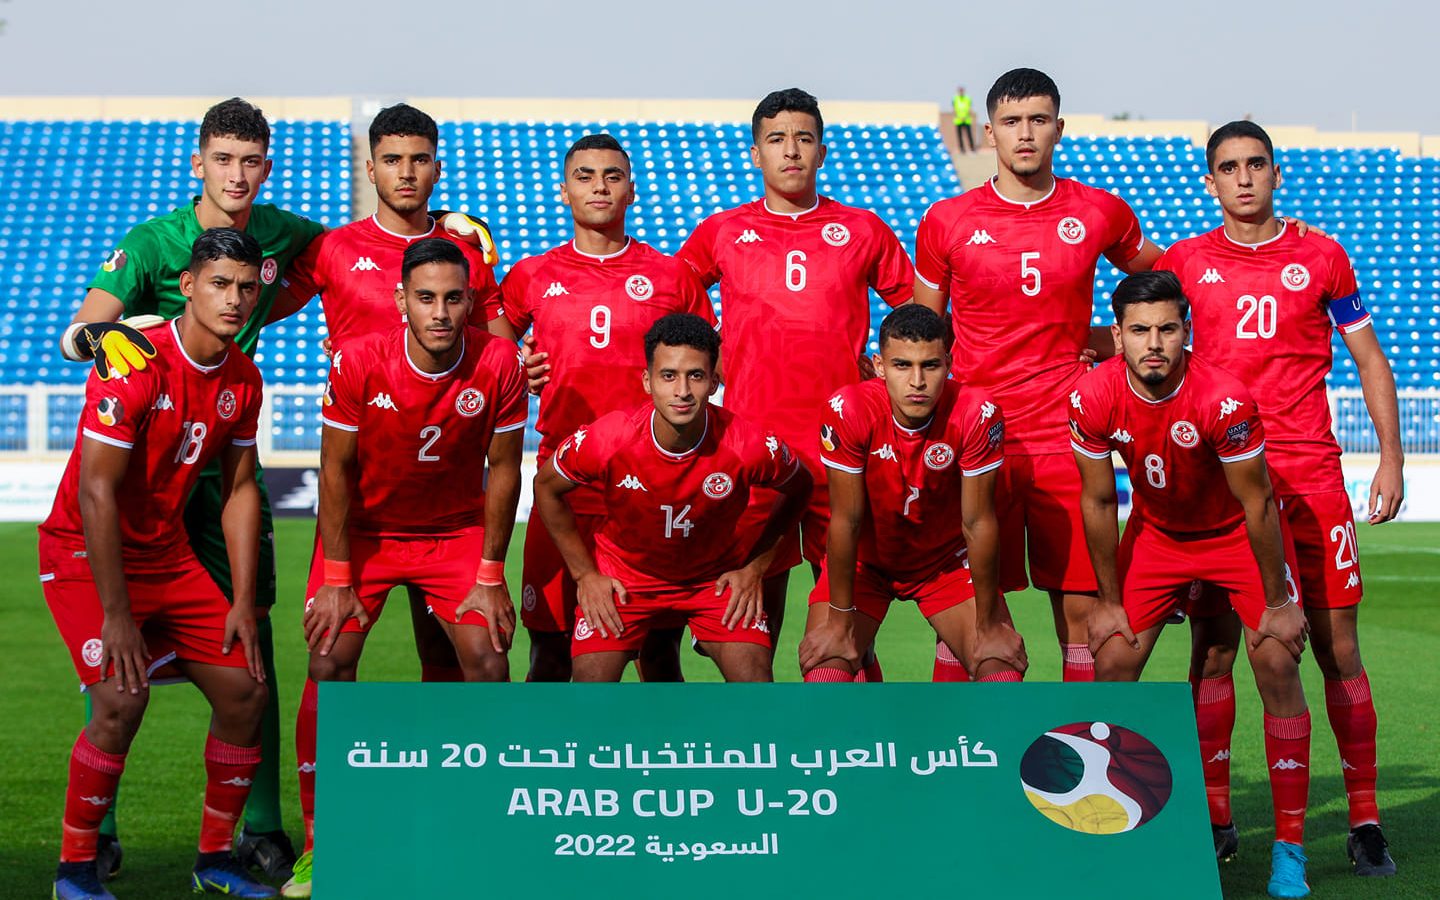 كأس العرب للشباب/ المنتخب يواجه اليوم جيبوتي بهذه التشكيلة